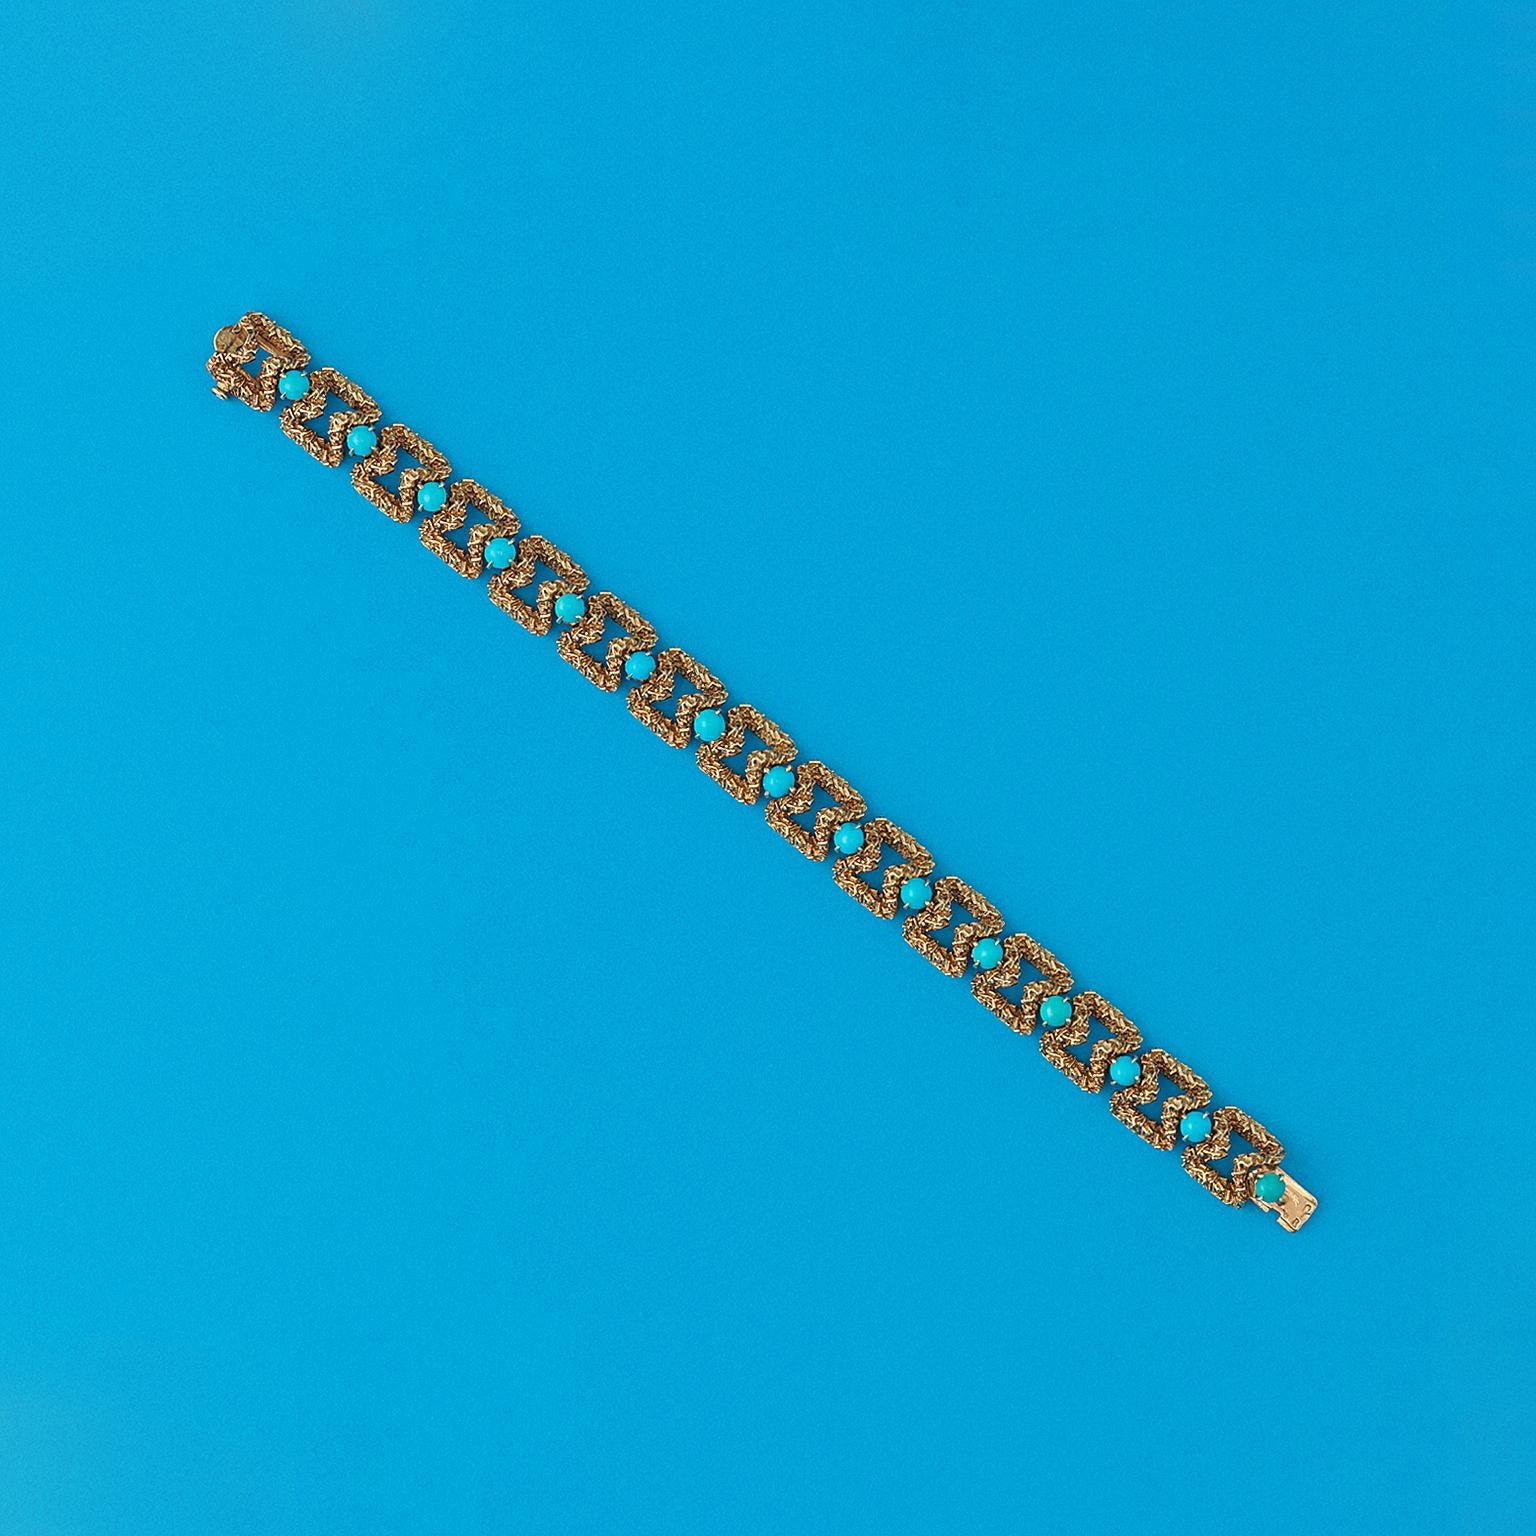 Ein Armband aus 18 Karat Gelbgold mit sanduhrförmigen Gliedern, zwischen denen jeweils ein Türkis im Cabochon-Schliff in einer winzigen Fassung mit vier Krallen sitzt, signiert: Mauboussin Paris, um 1960.

gewicht: 41,71 Gramm 
länge: 18 cm gut